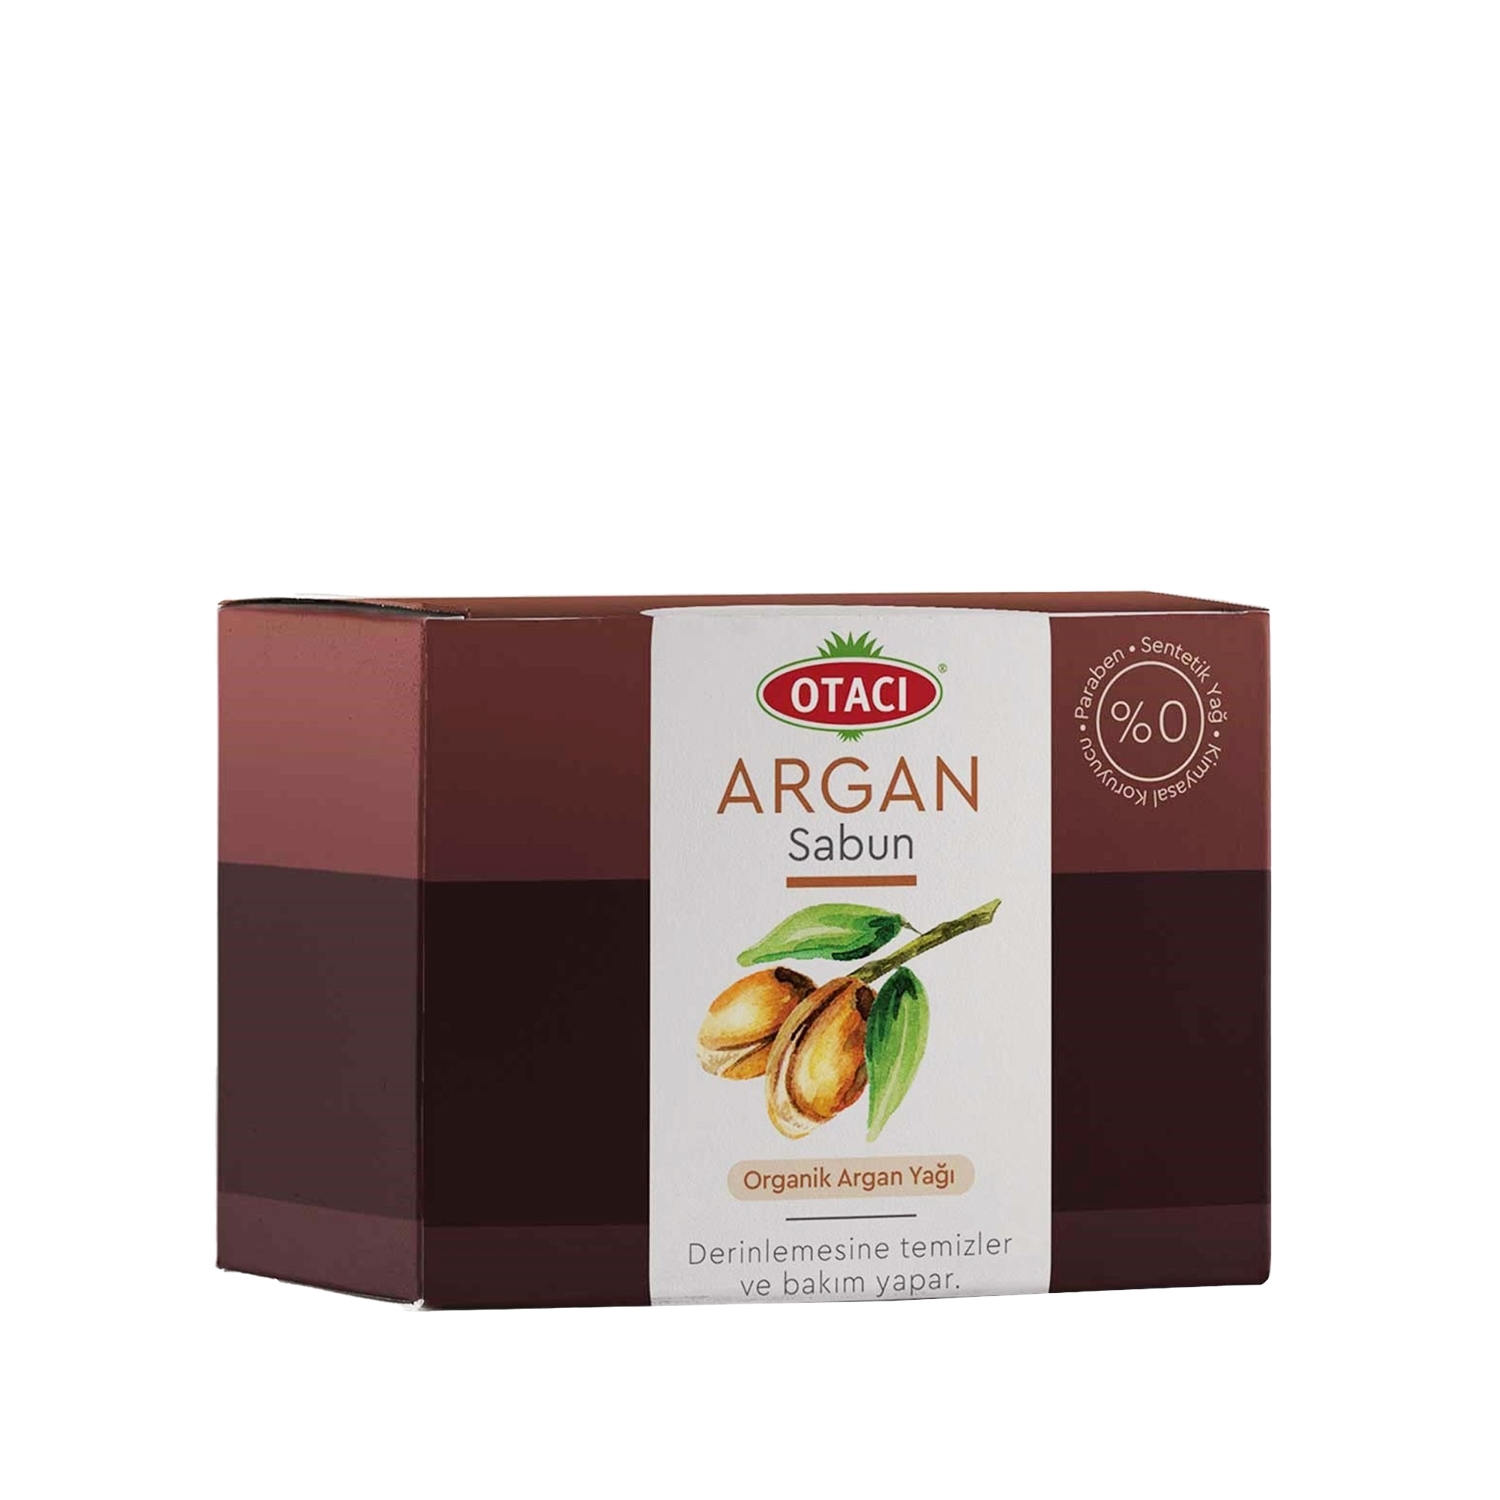 Otacı Argan Sabun 100 g